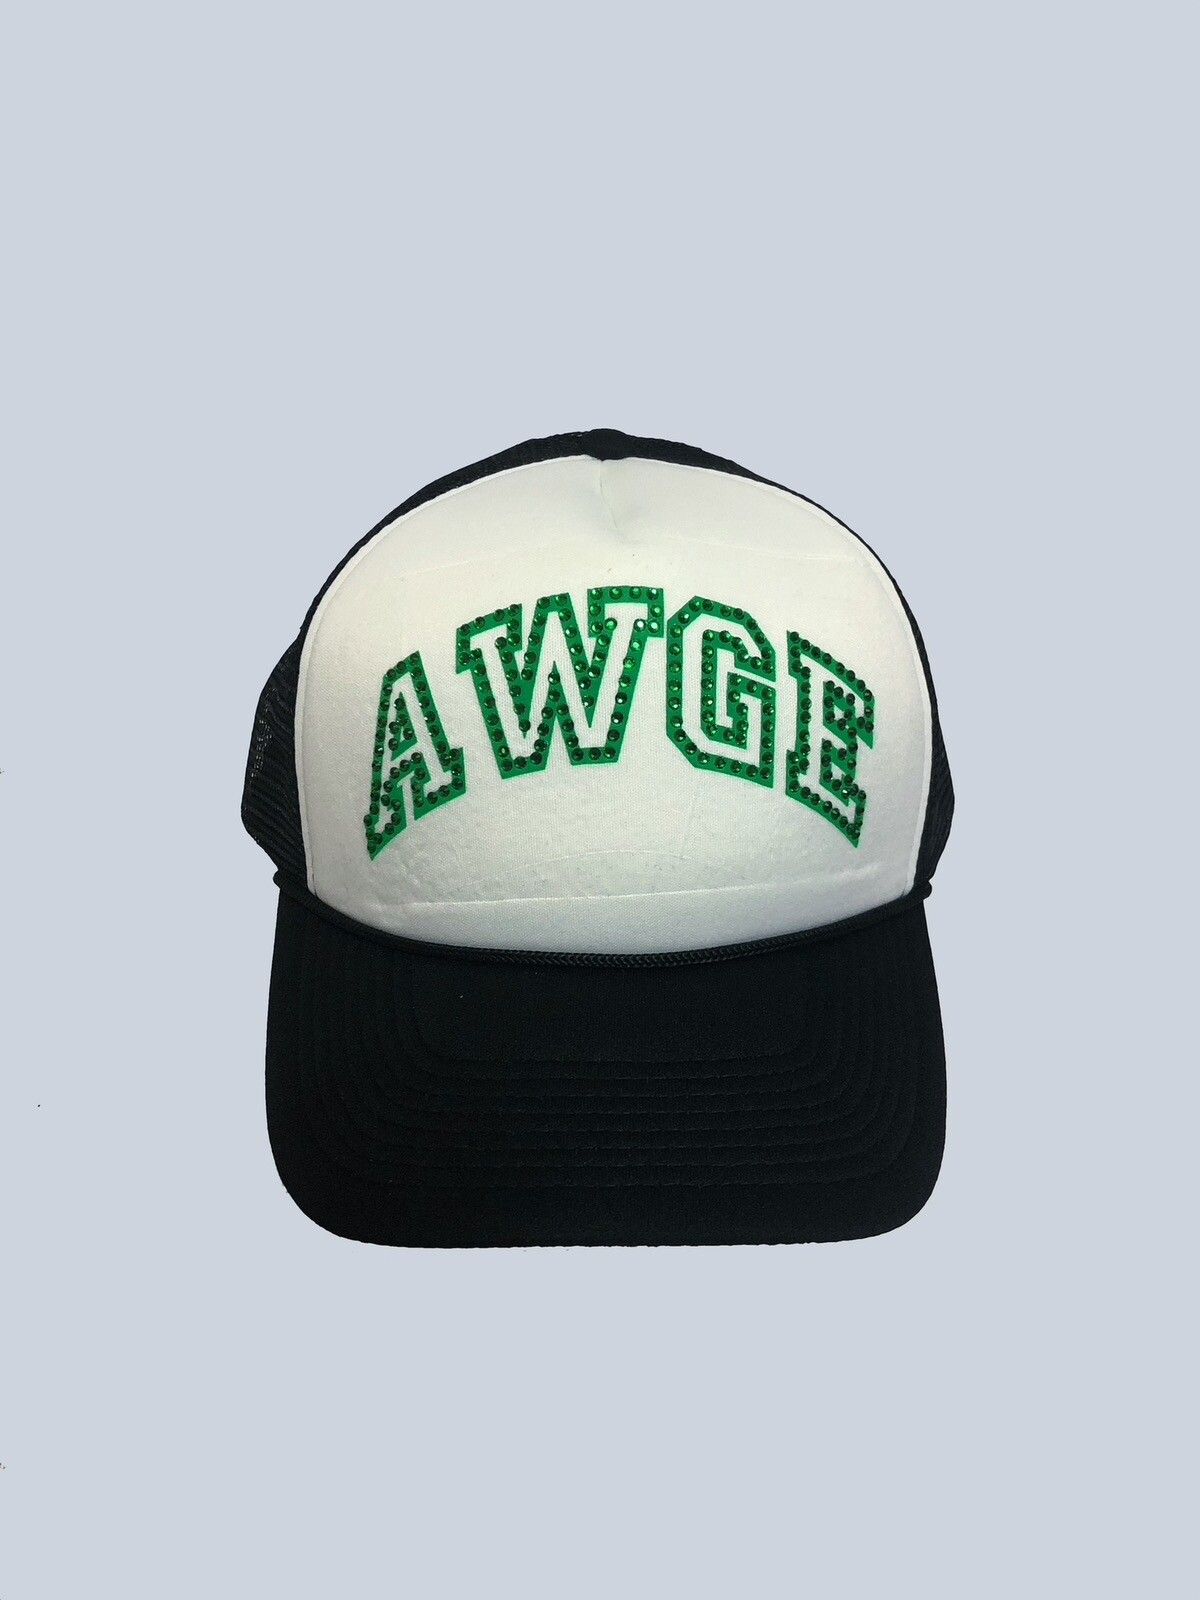 AWGE awge trucker hat rare color | Grailed